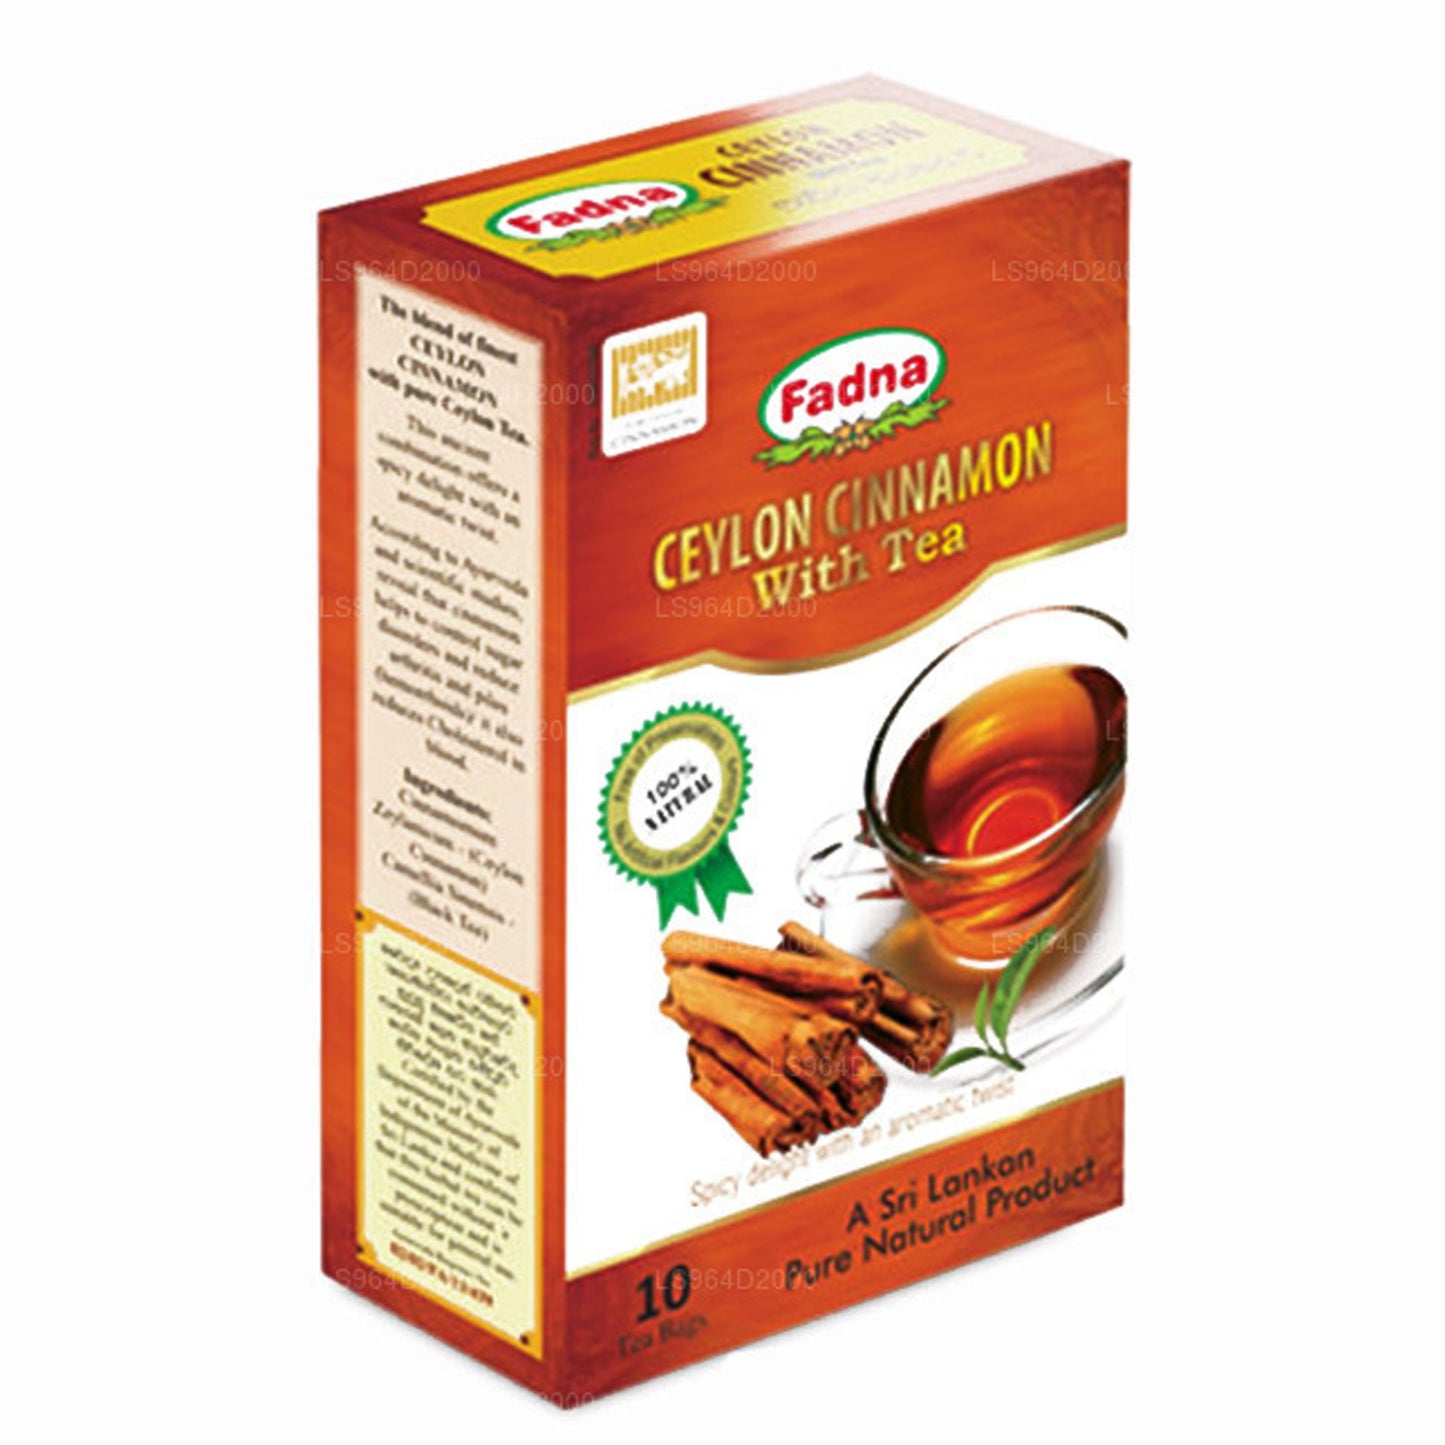 Fadna Ceylon Cinnamon Kruidenthee (20 g) 10 theezakjes